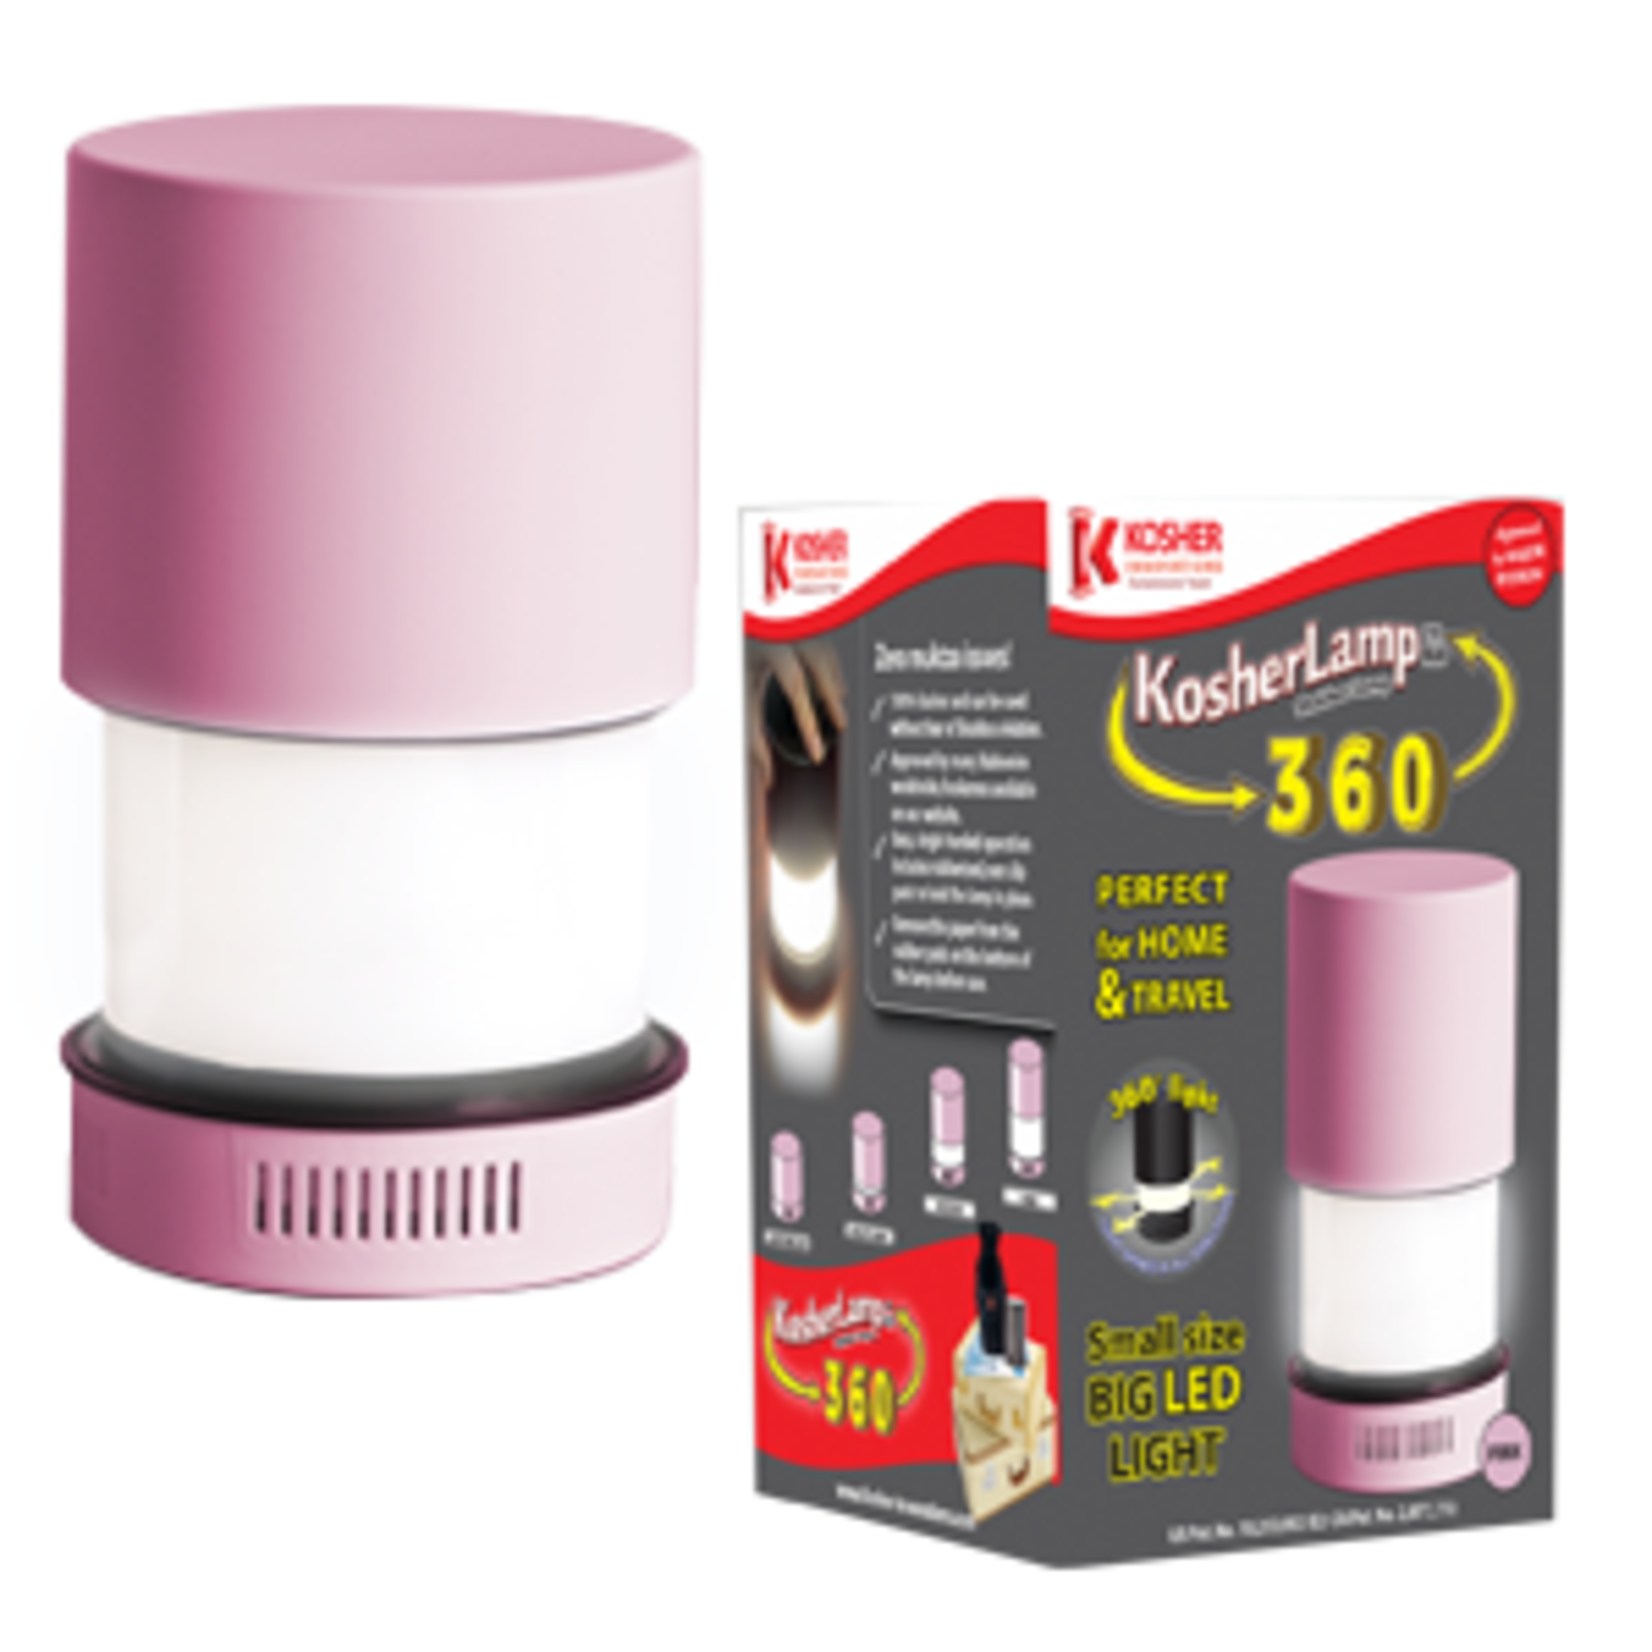 KosherLamp 360 Pink